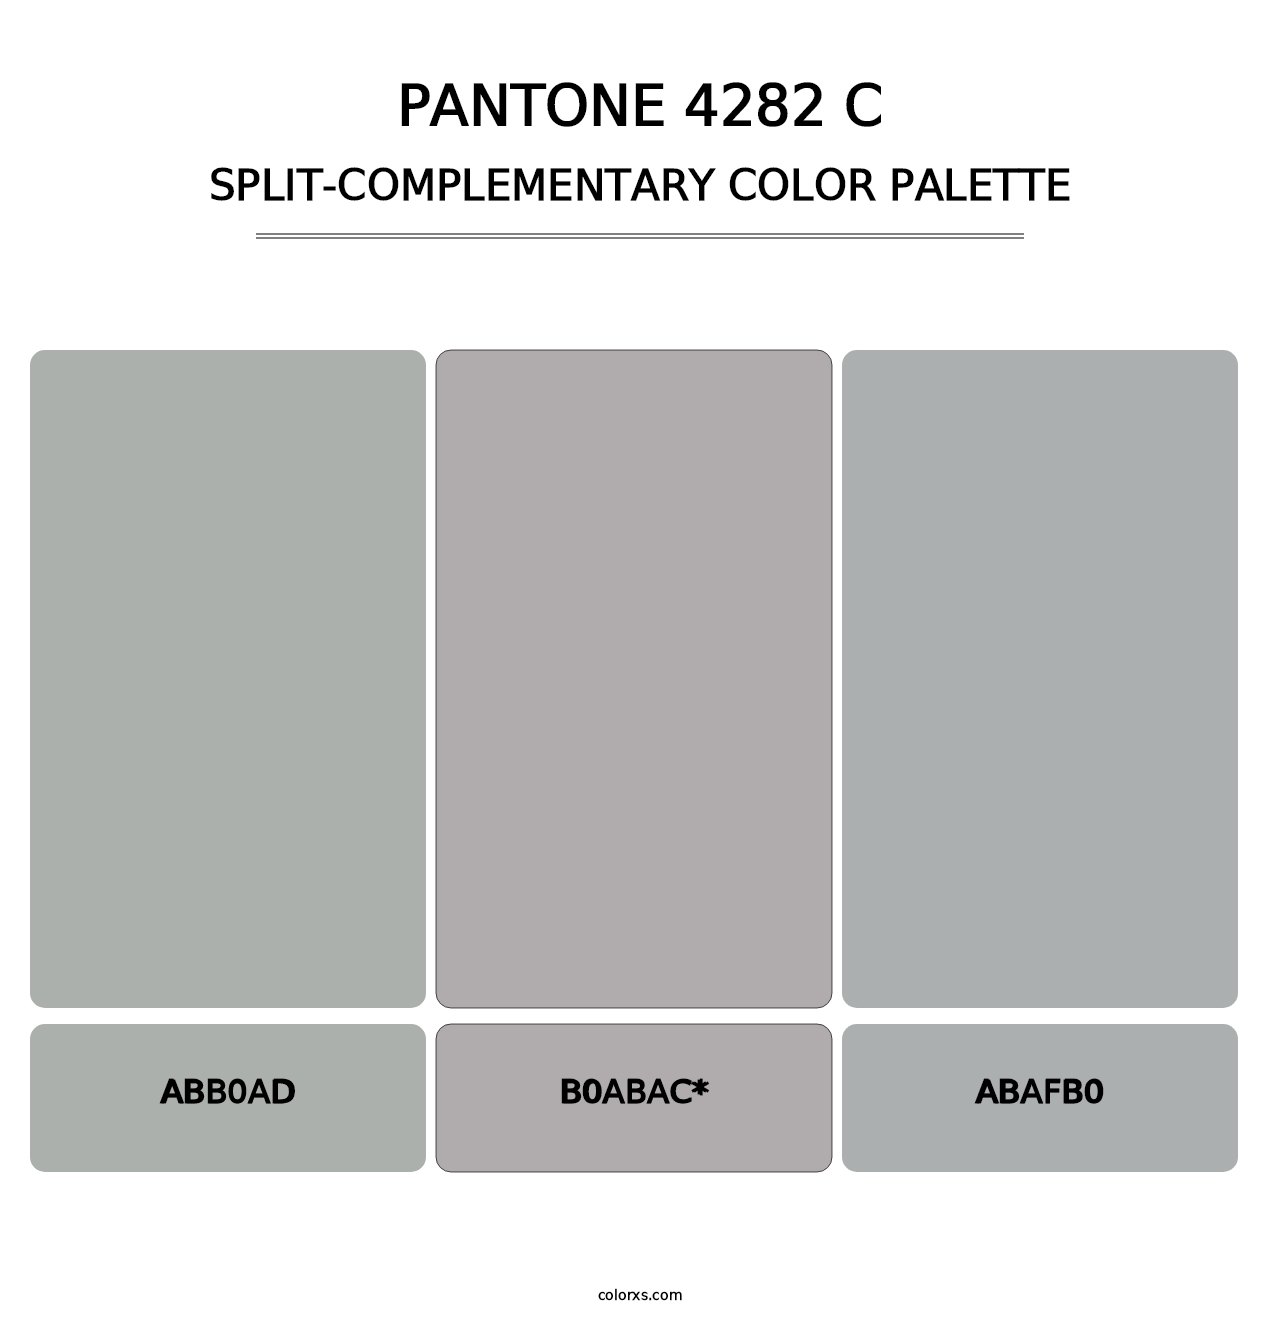 PANTONE 4282 C - Split-Complementary Color Palette